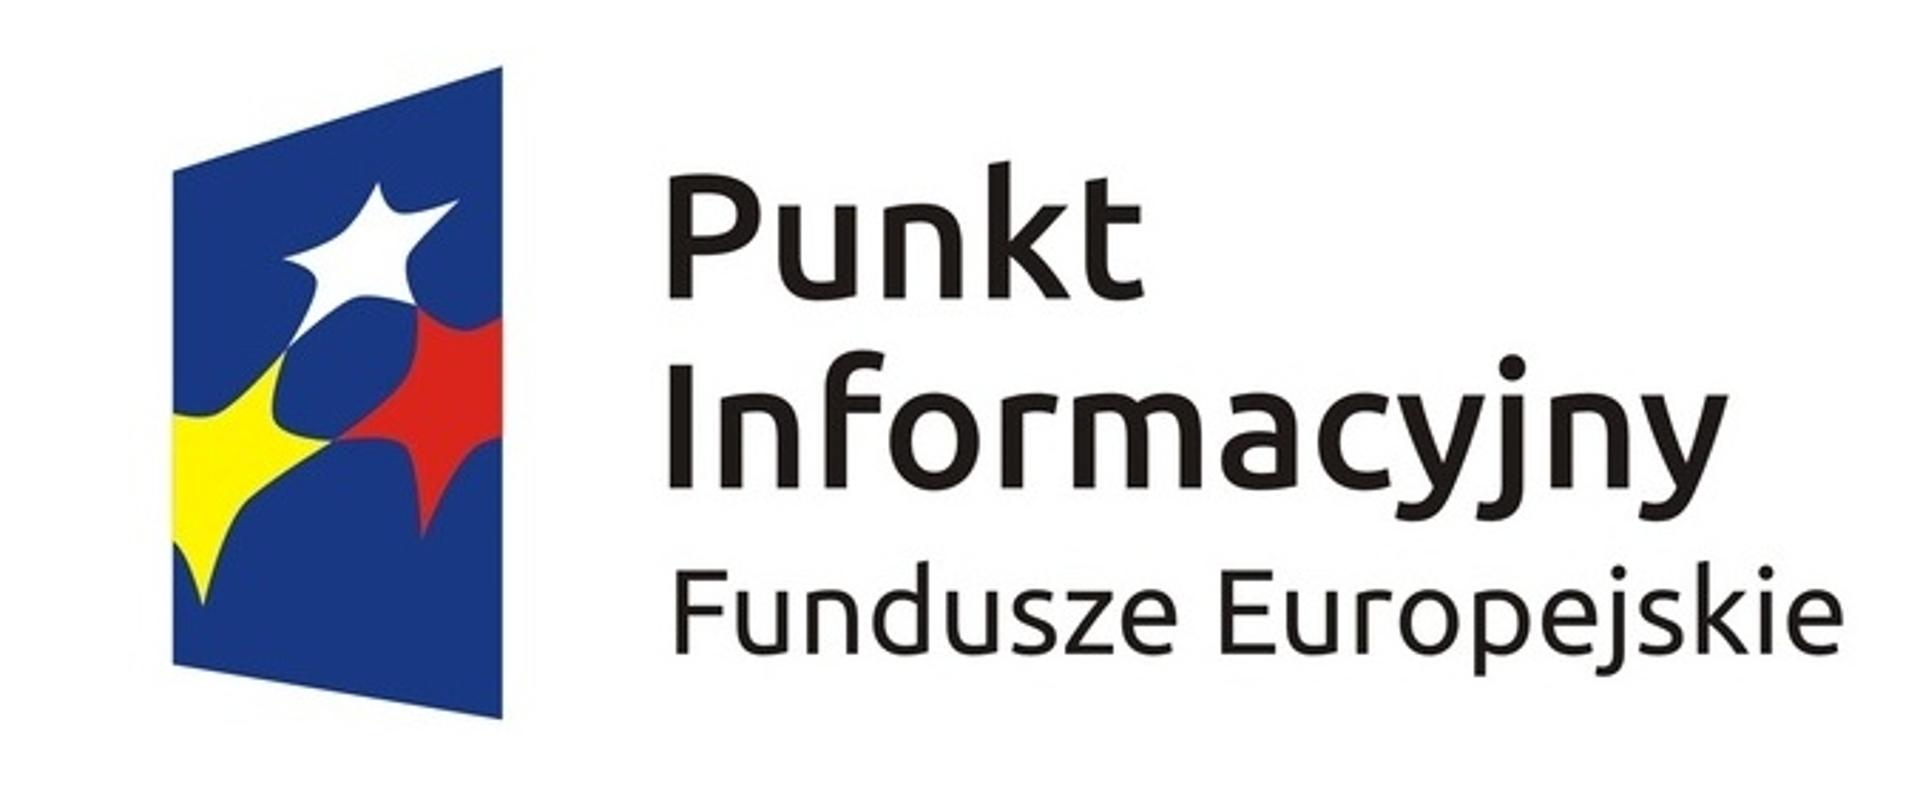 baner fundusze europejskie